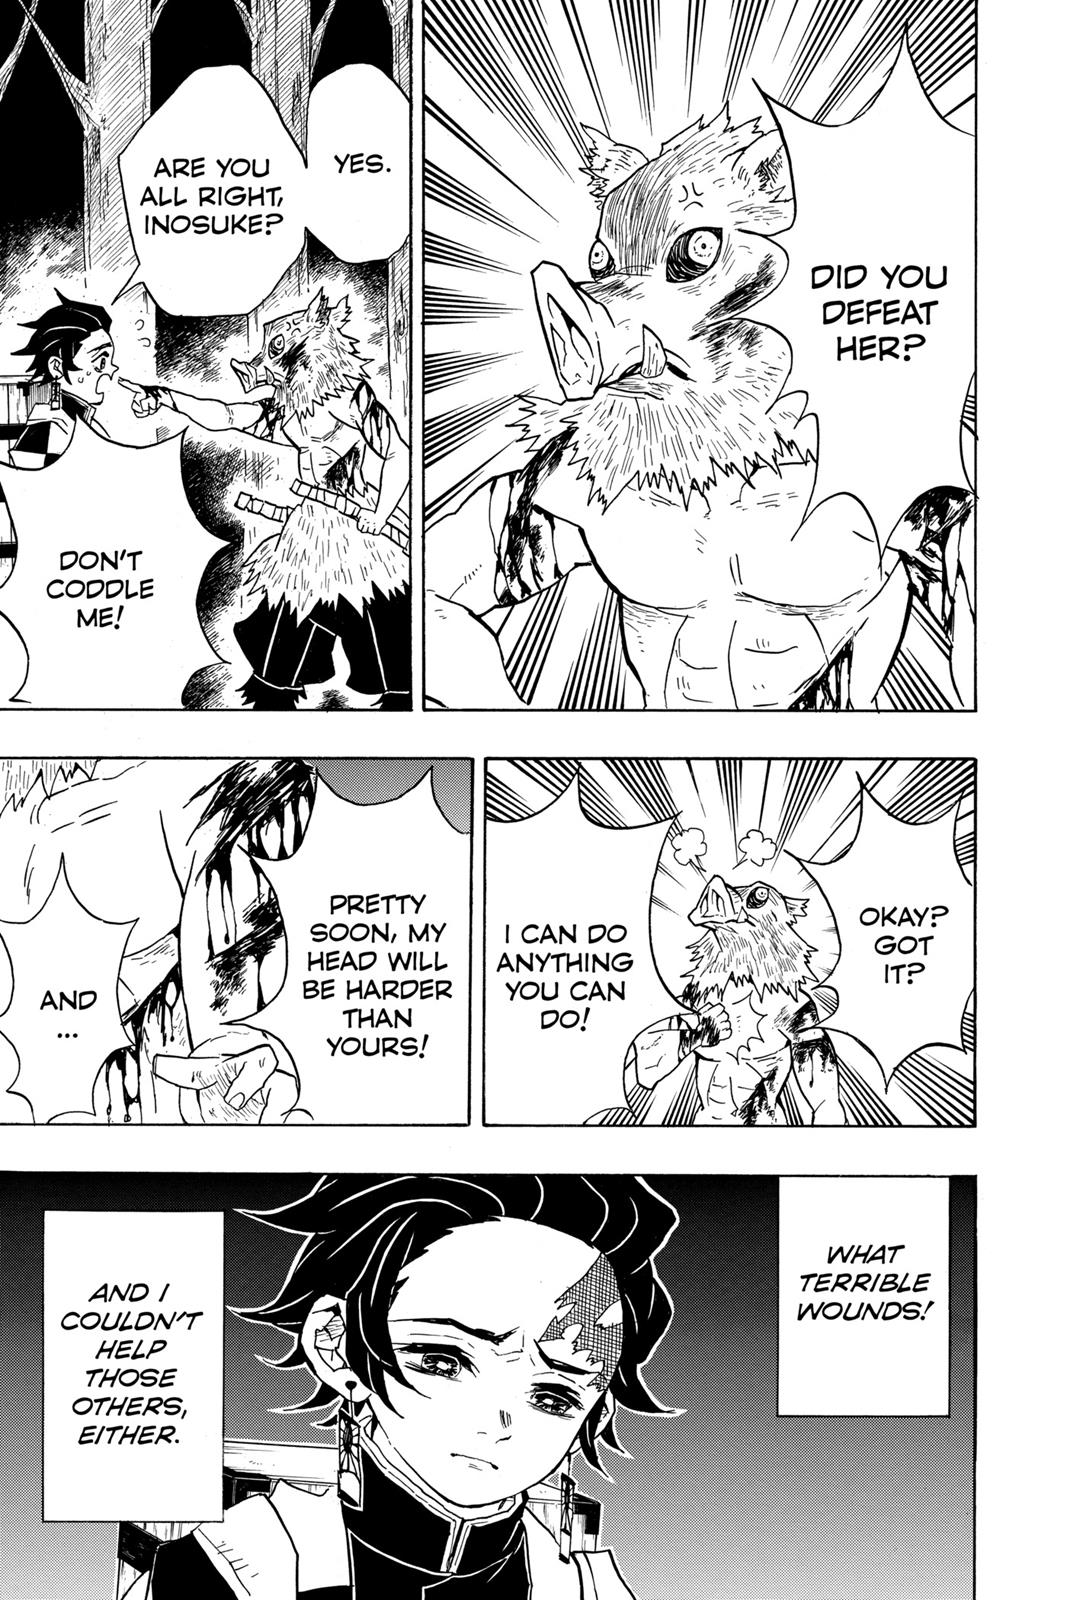 Demon Slayer Manga Manga Chapter - 32 - image 9